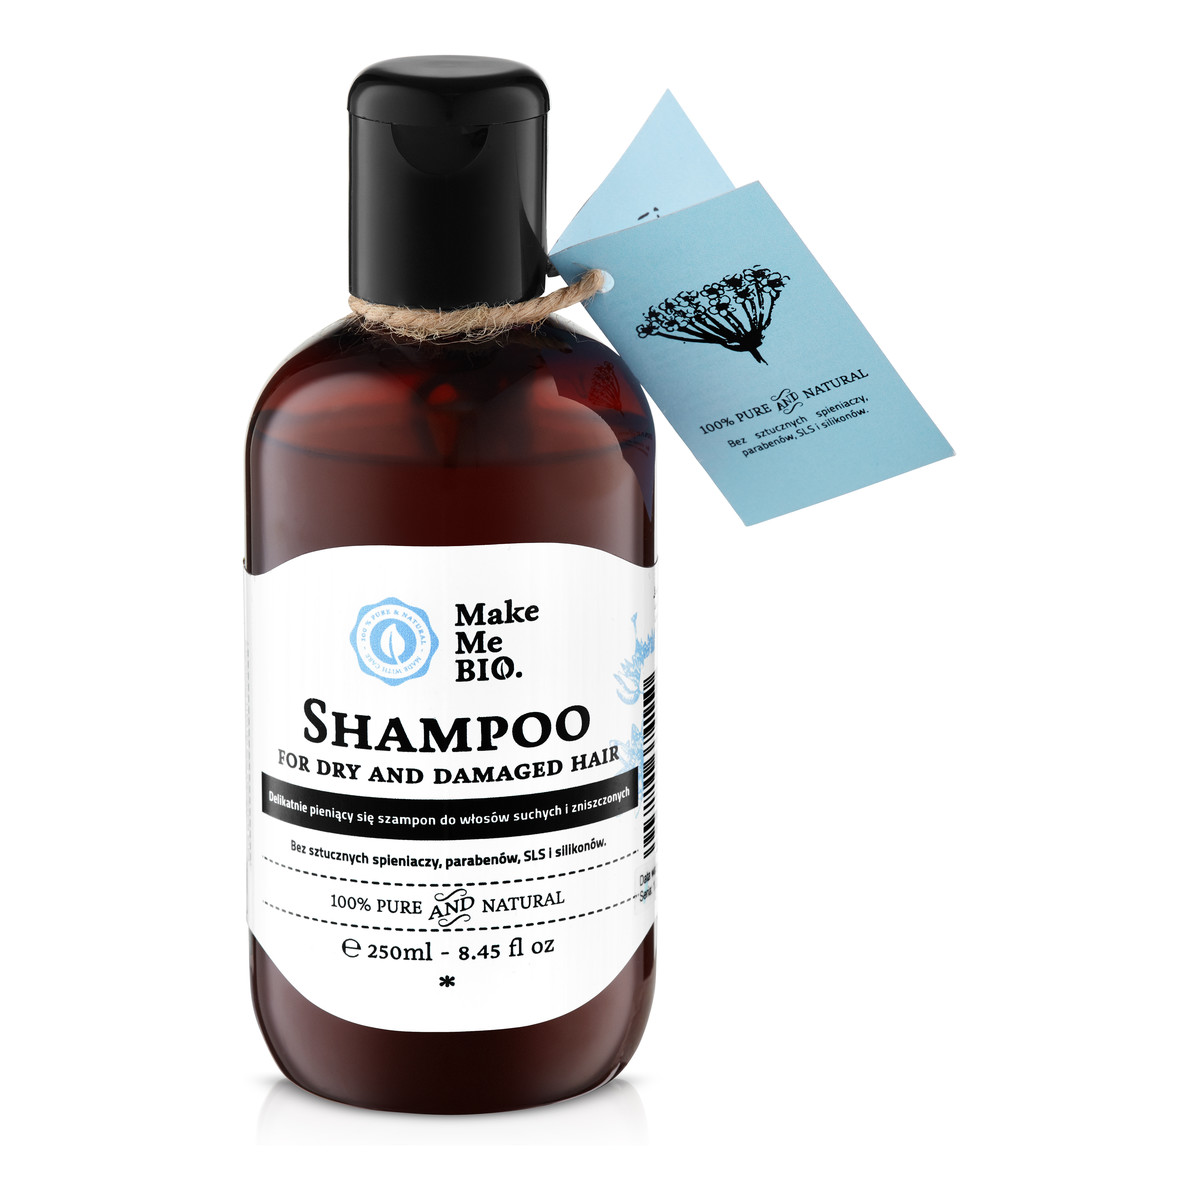 Make Me Bio Delikatnie pieniący się szampon do włosów suchych i zniszczonych 250ml